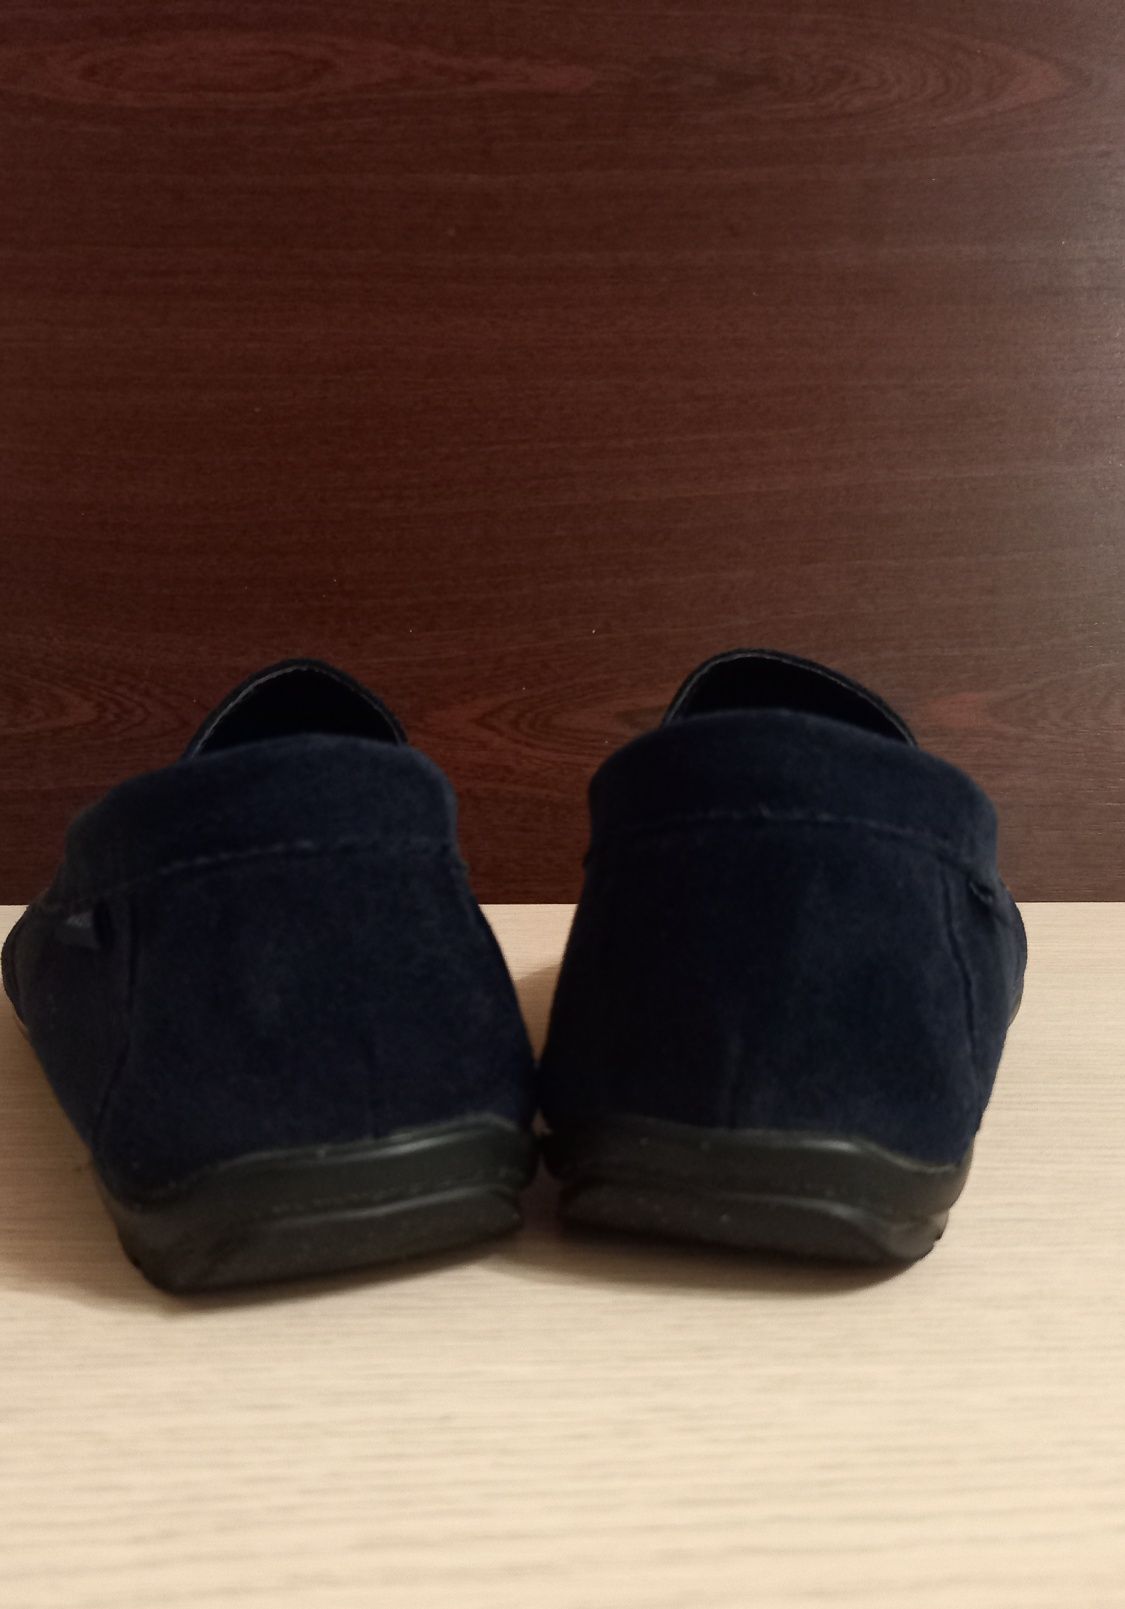 Продам мокасины (туфли) синие 39р.